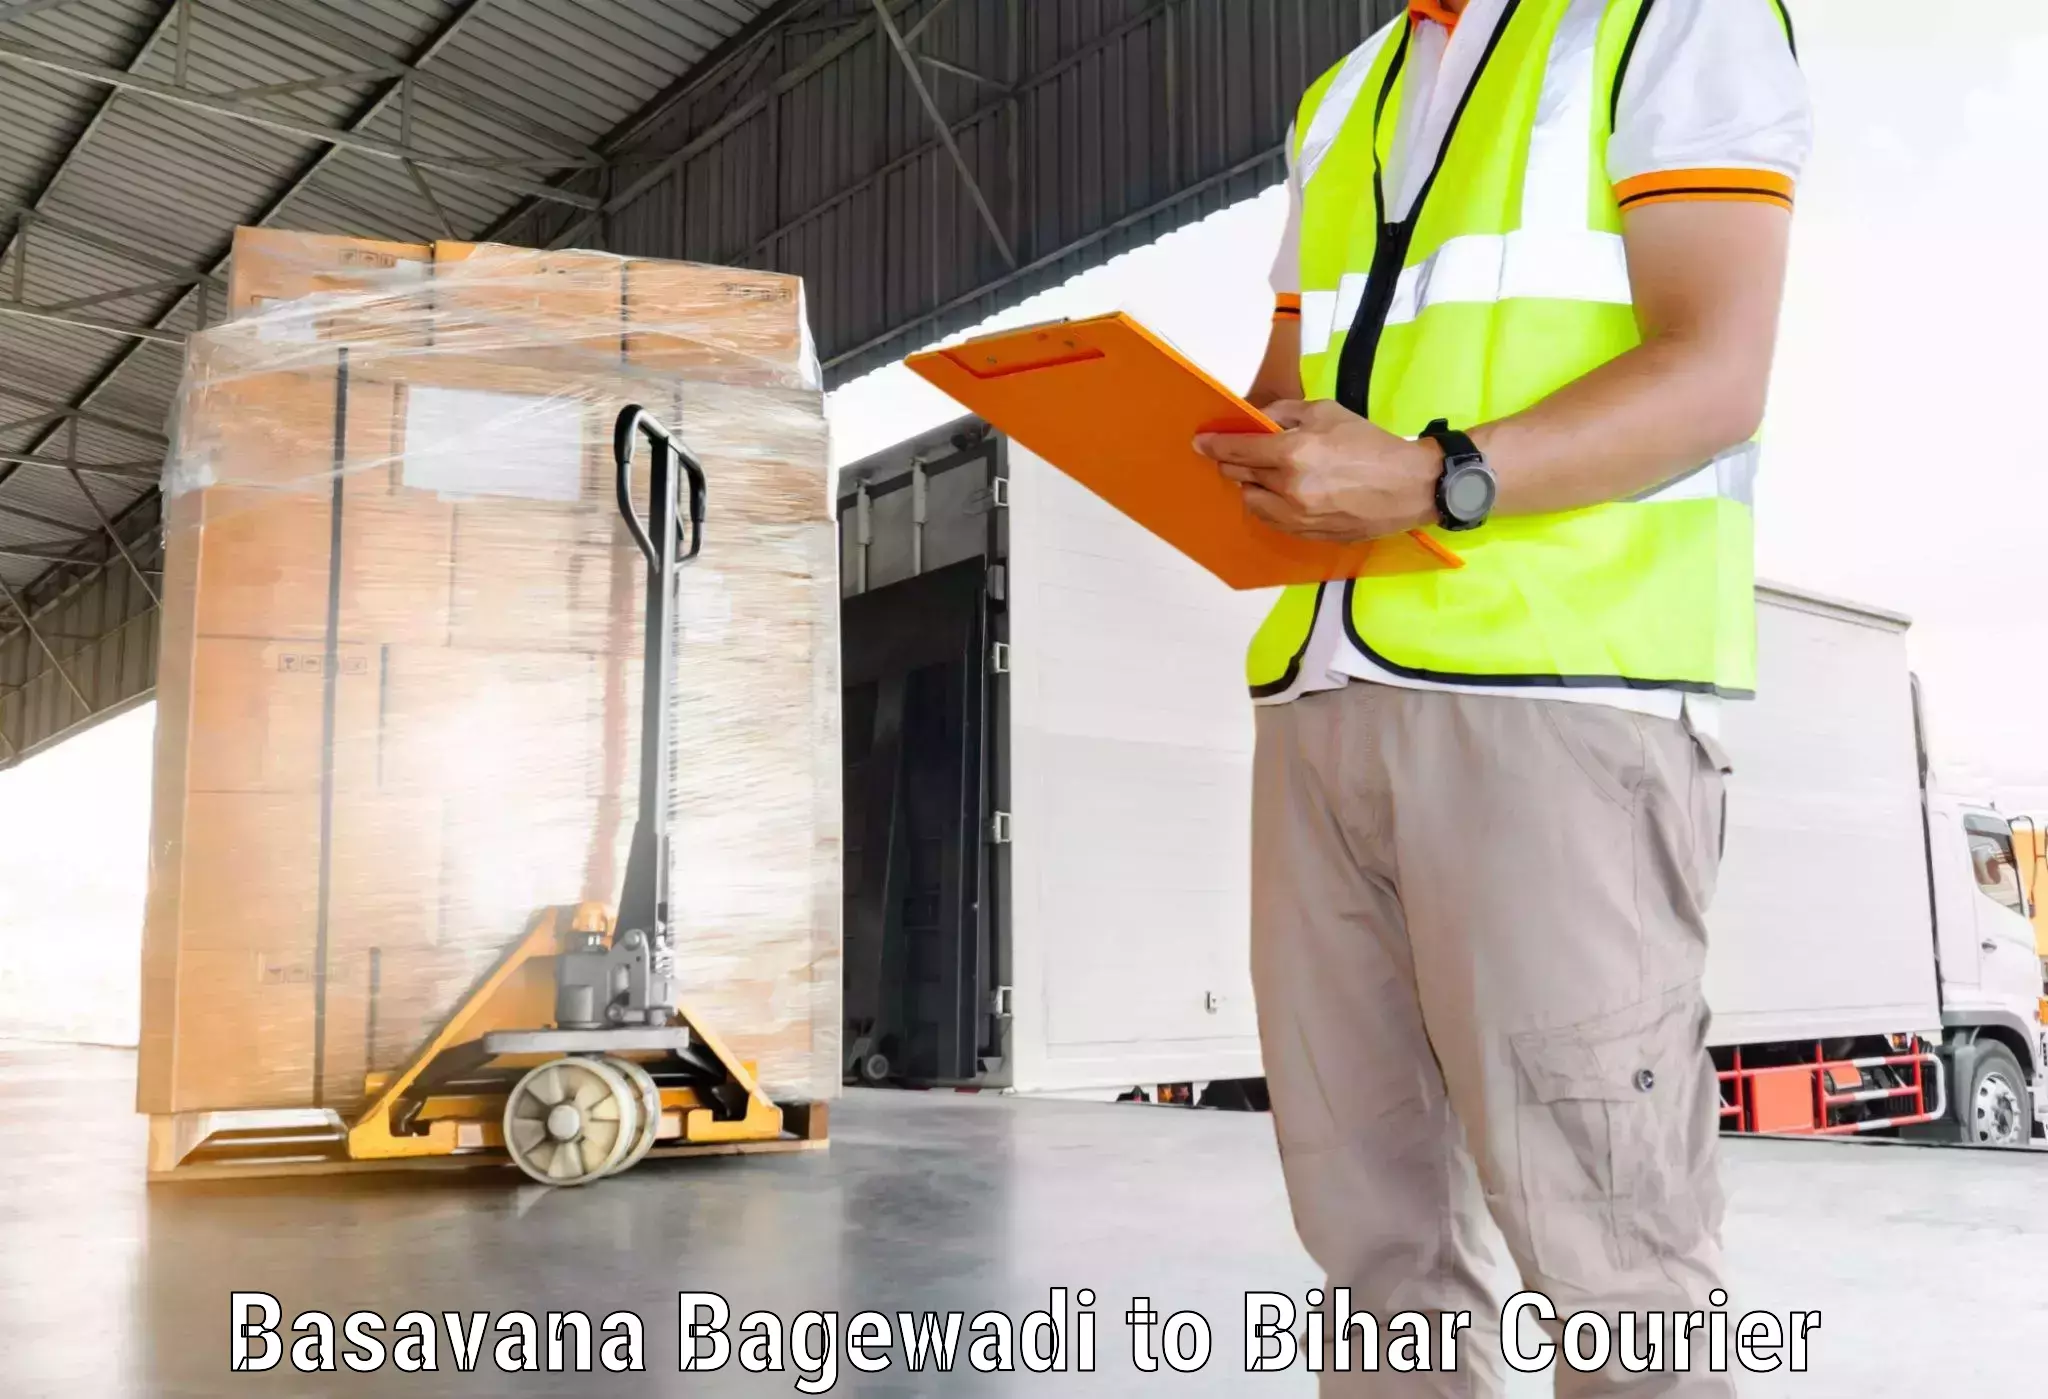 Global freight services Basavana Bagewadi to Bhojpur